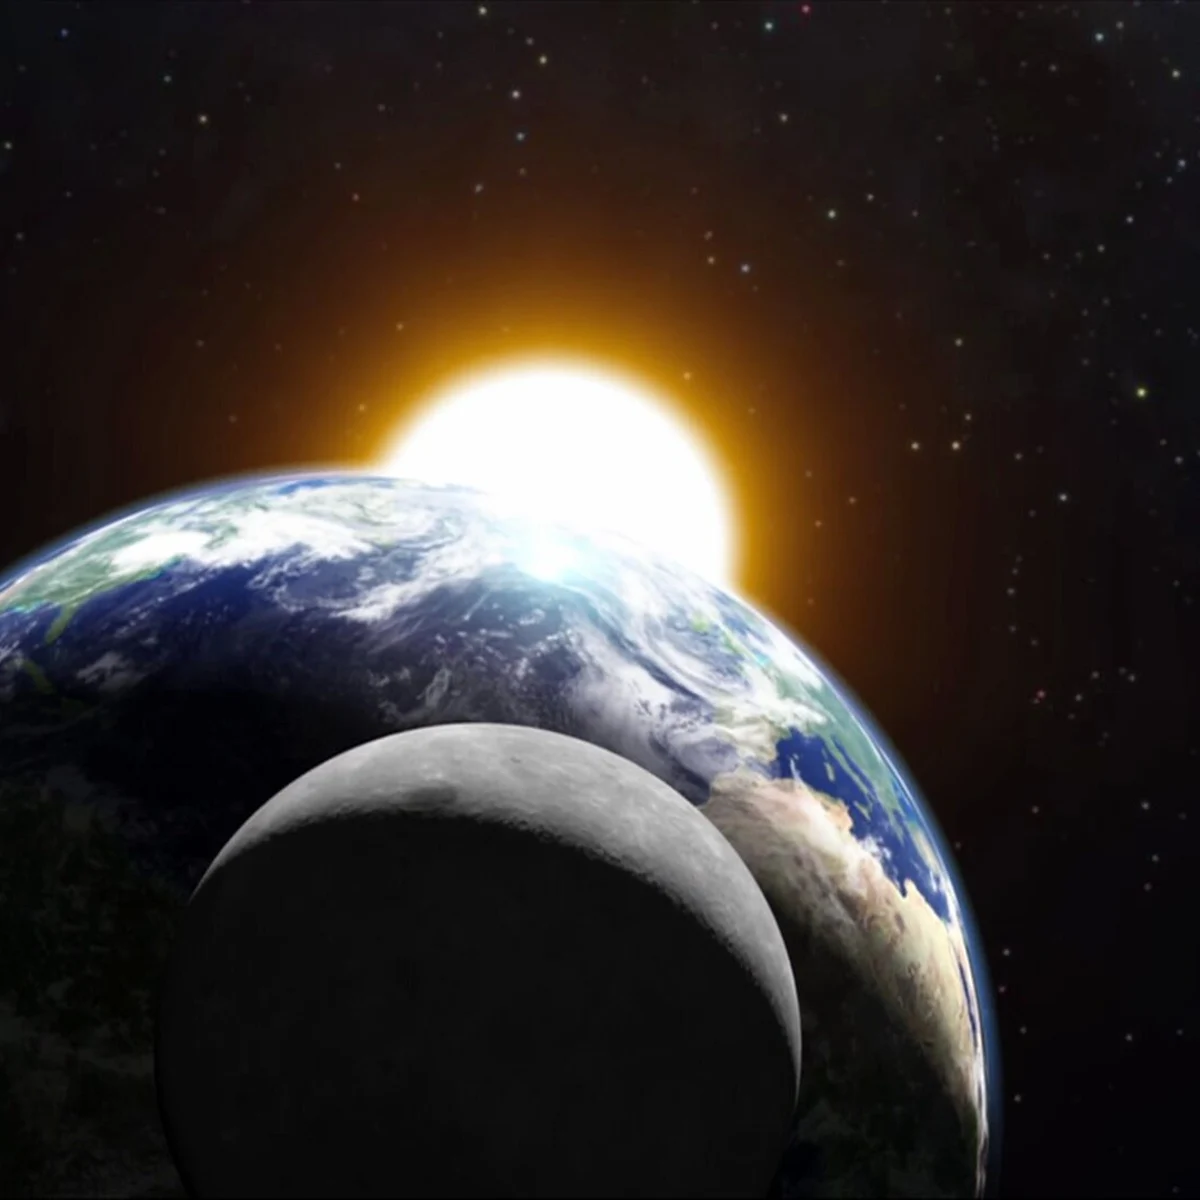 La Tierra alcanza hoy su punto más cercano al Sol: el perihelio provoca la velocidad máxima del planeta